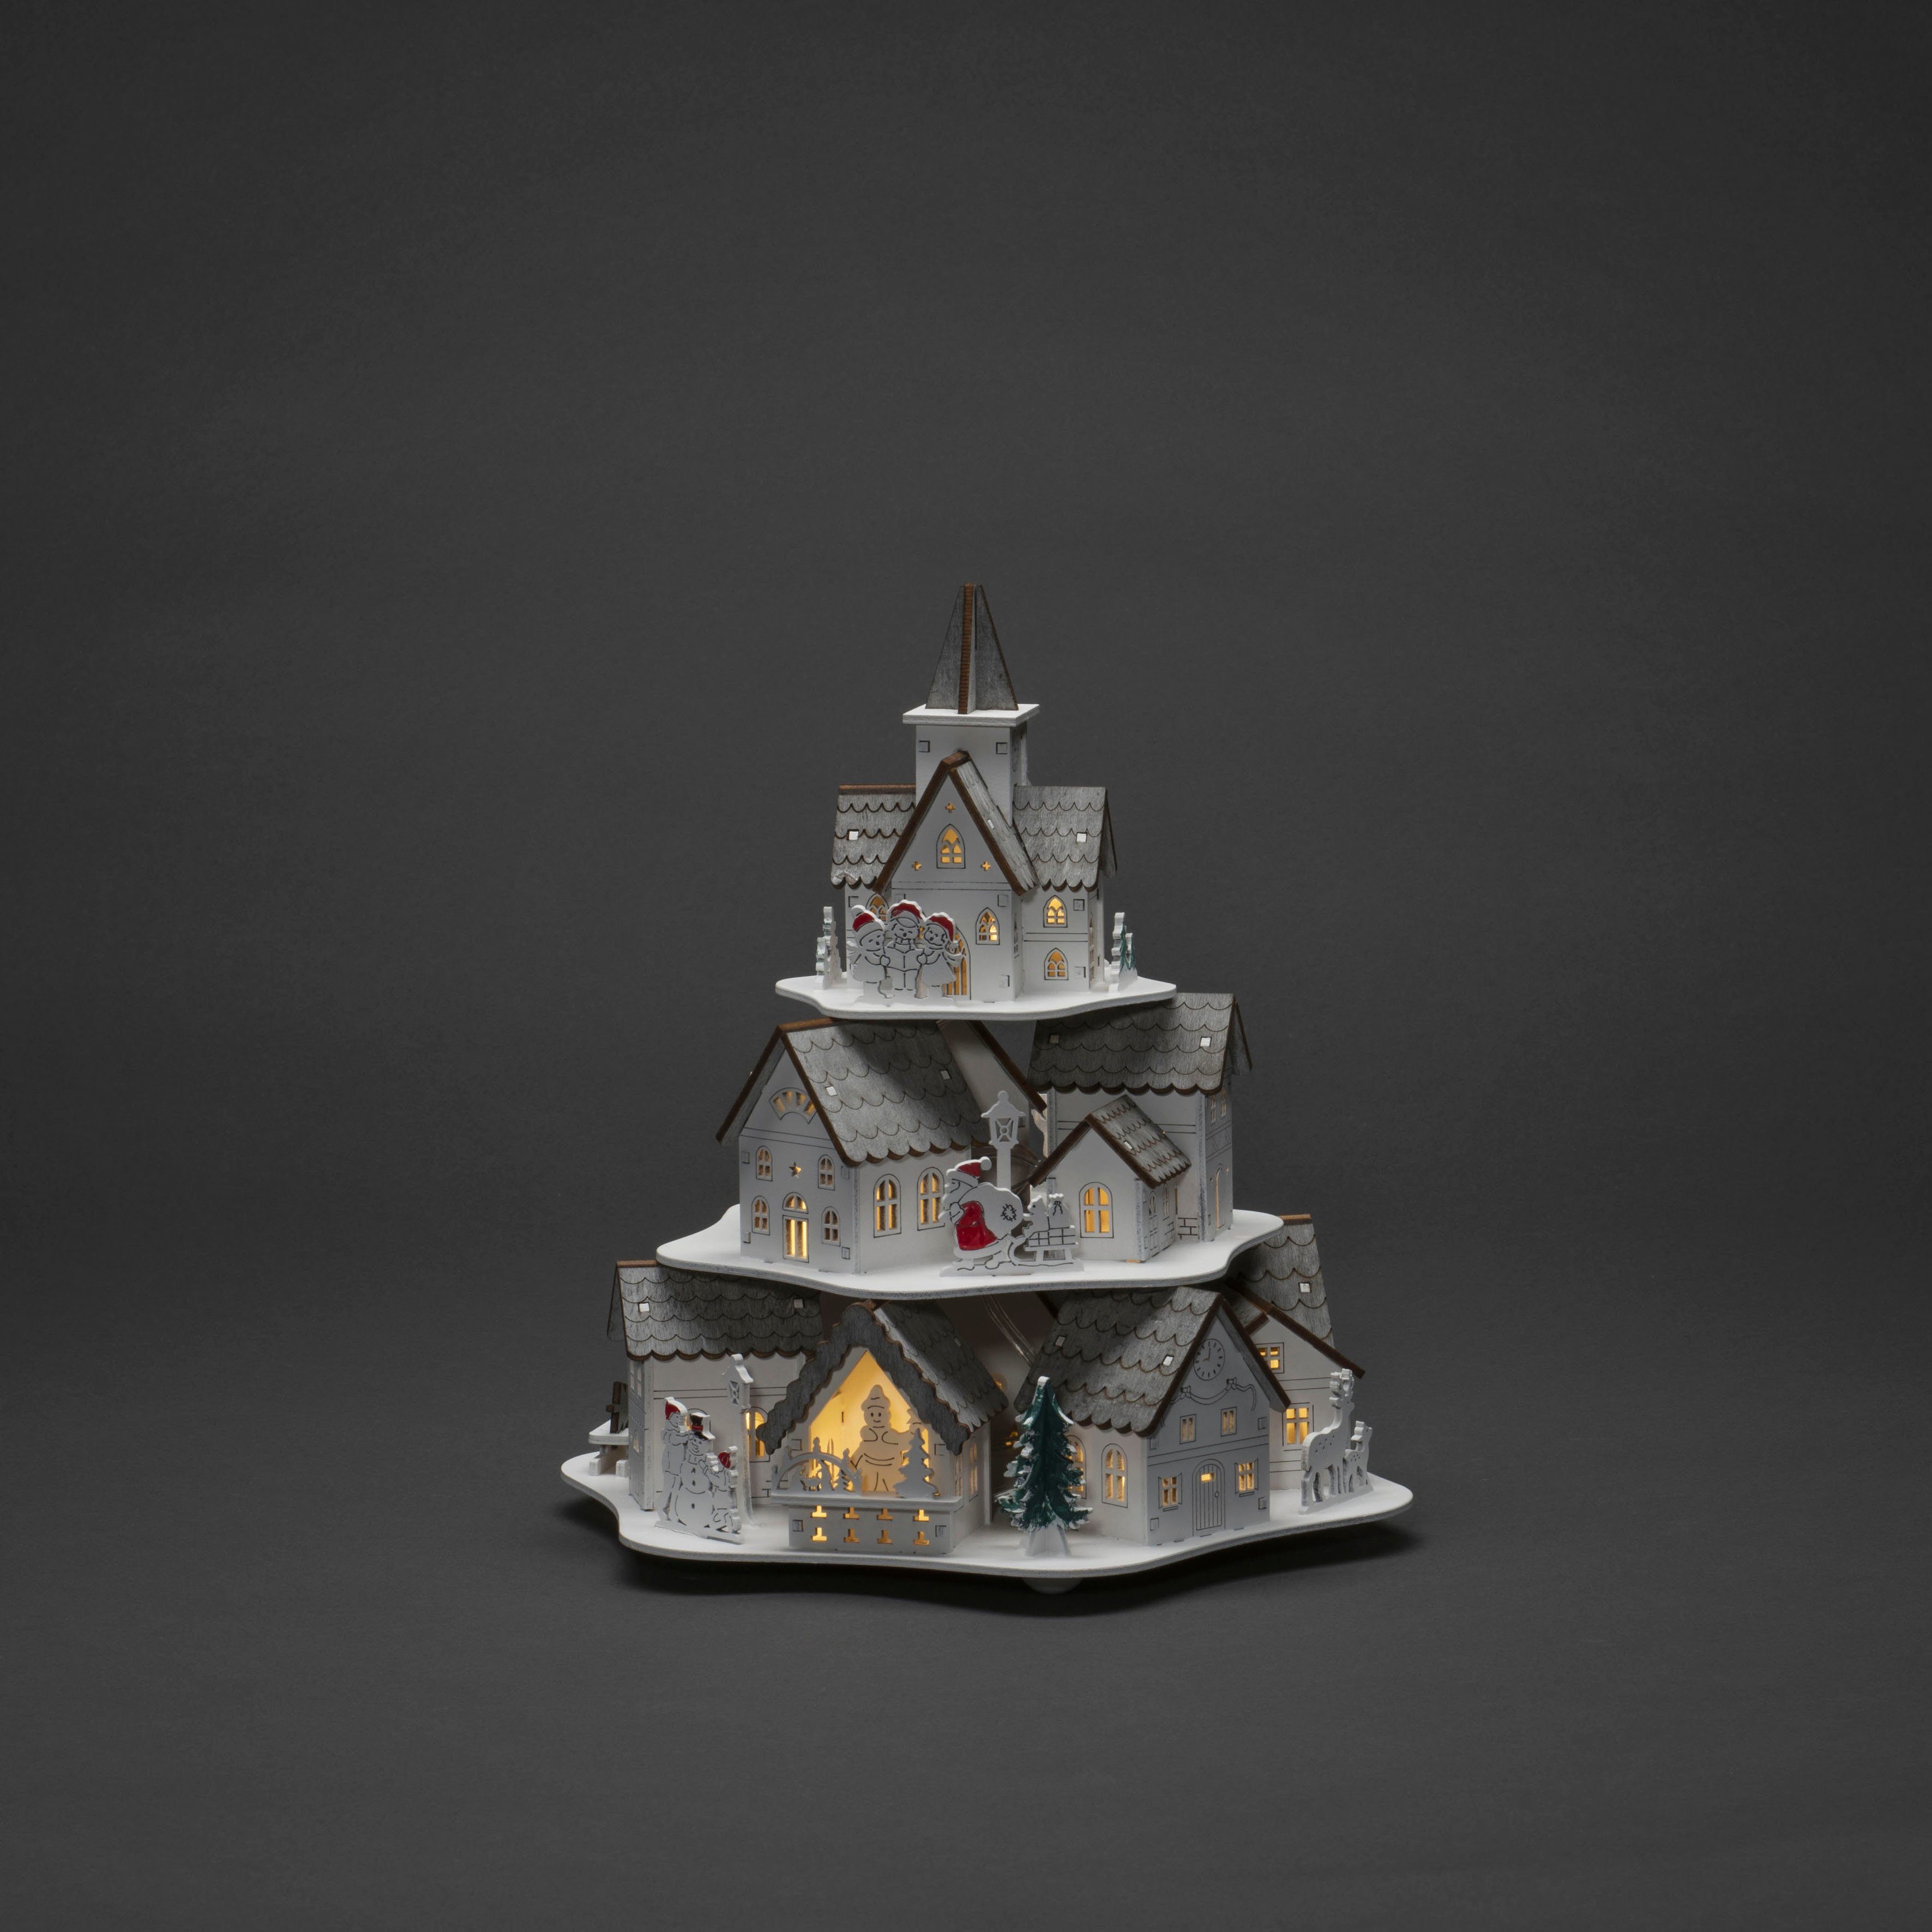 KONSTSMIDE Weihnachtshaus LED Holzsilhouette Häuser, weiß, 10 warm weiße  Dioden, wählbare Energieversorgung zwischen USB oder Batteriebetrieb, 6h  Timer | Leuchtfiguren